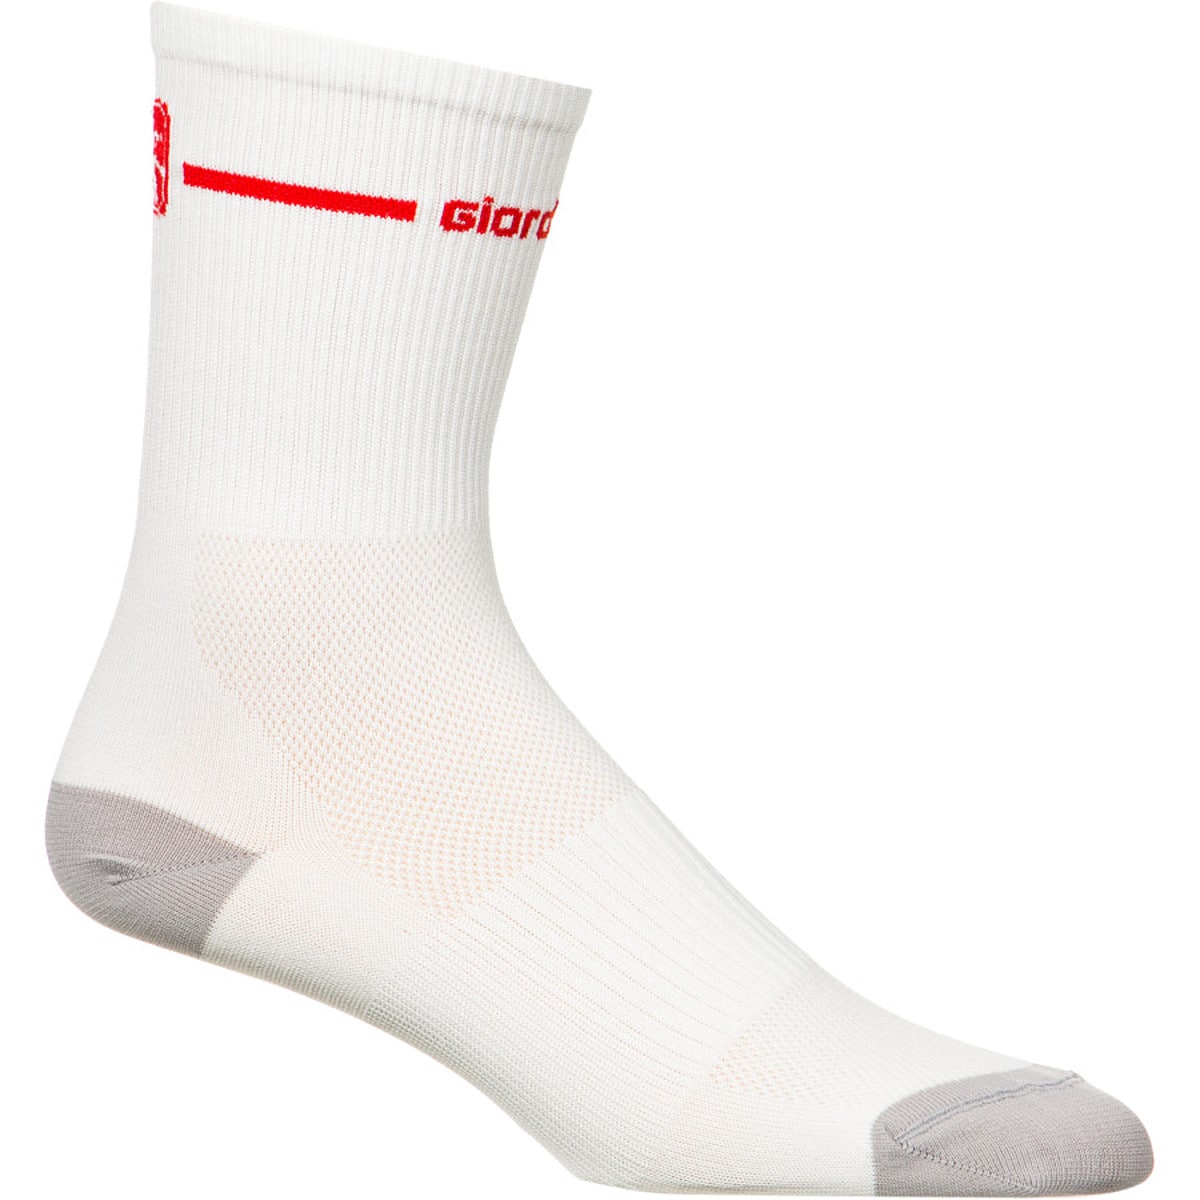 Giordana Trade Tall Cuff Socks Men's